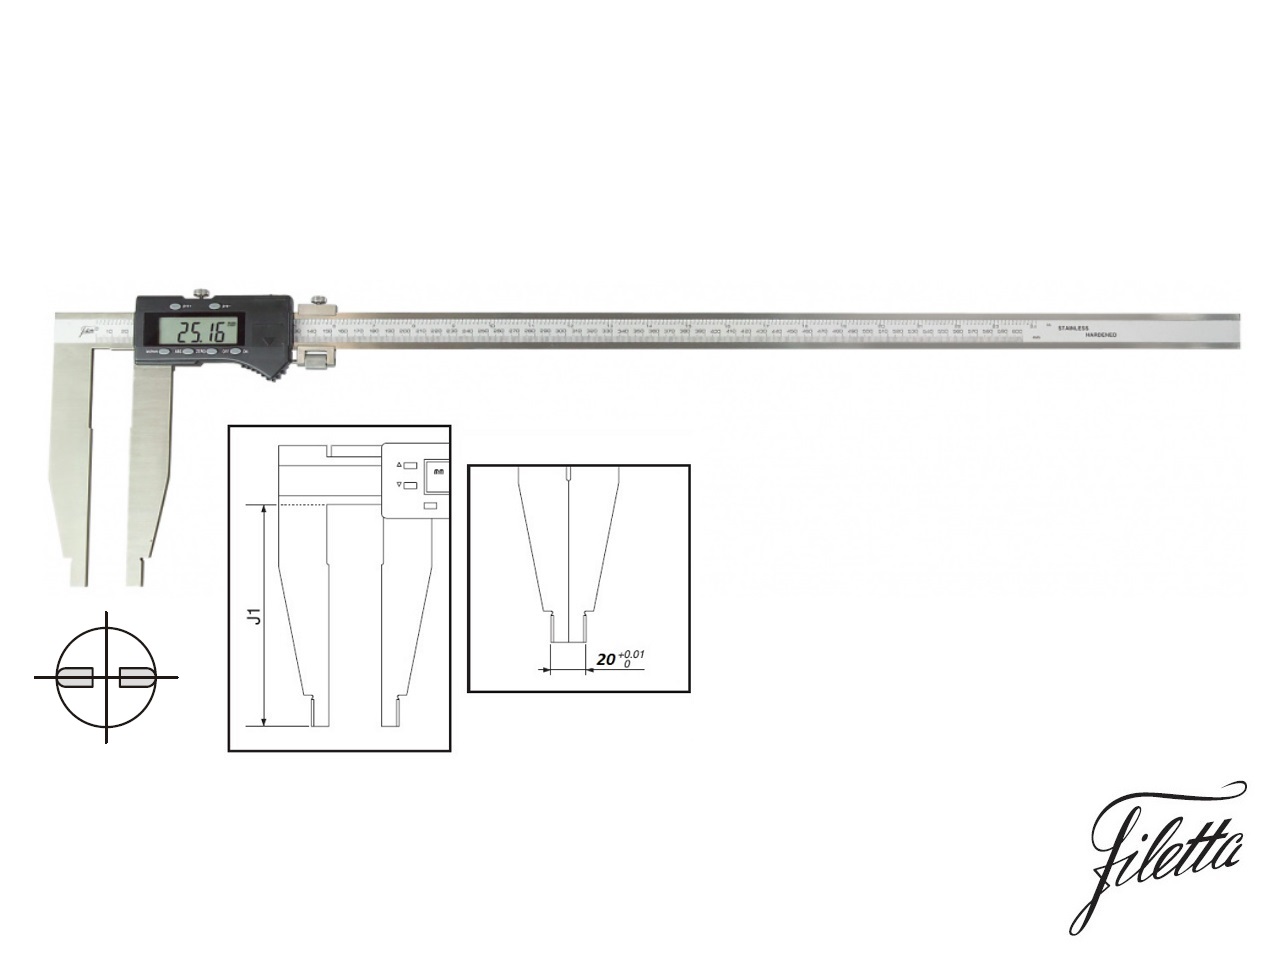 Digitální posuvné měřítko Filetta 0-300 mm bez nožíků, s měřicími čelistmi 75 mm 